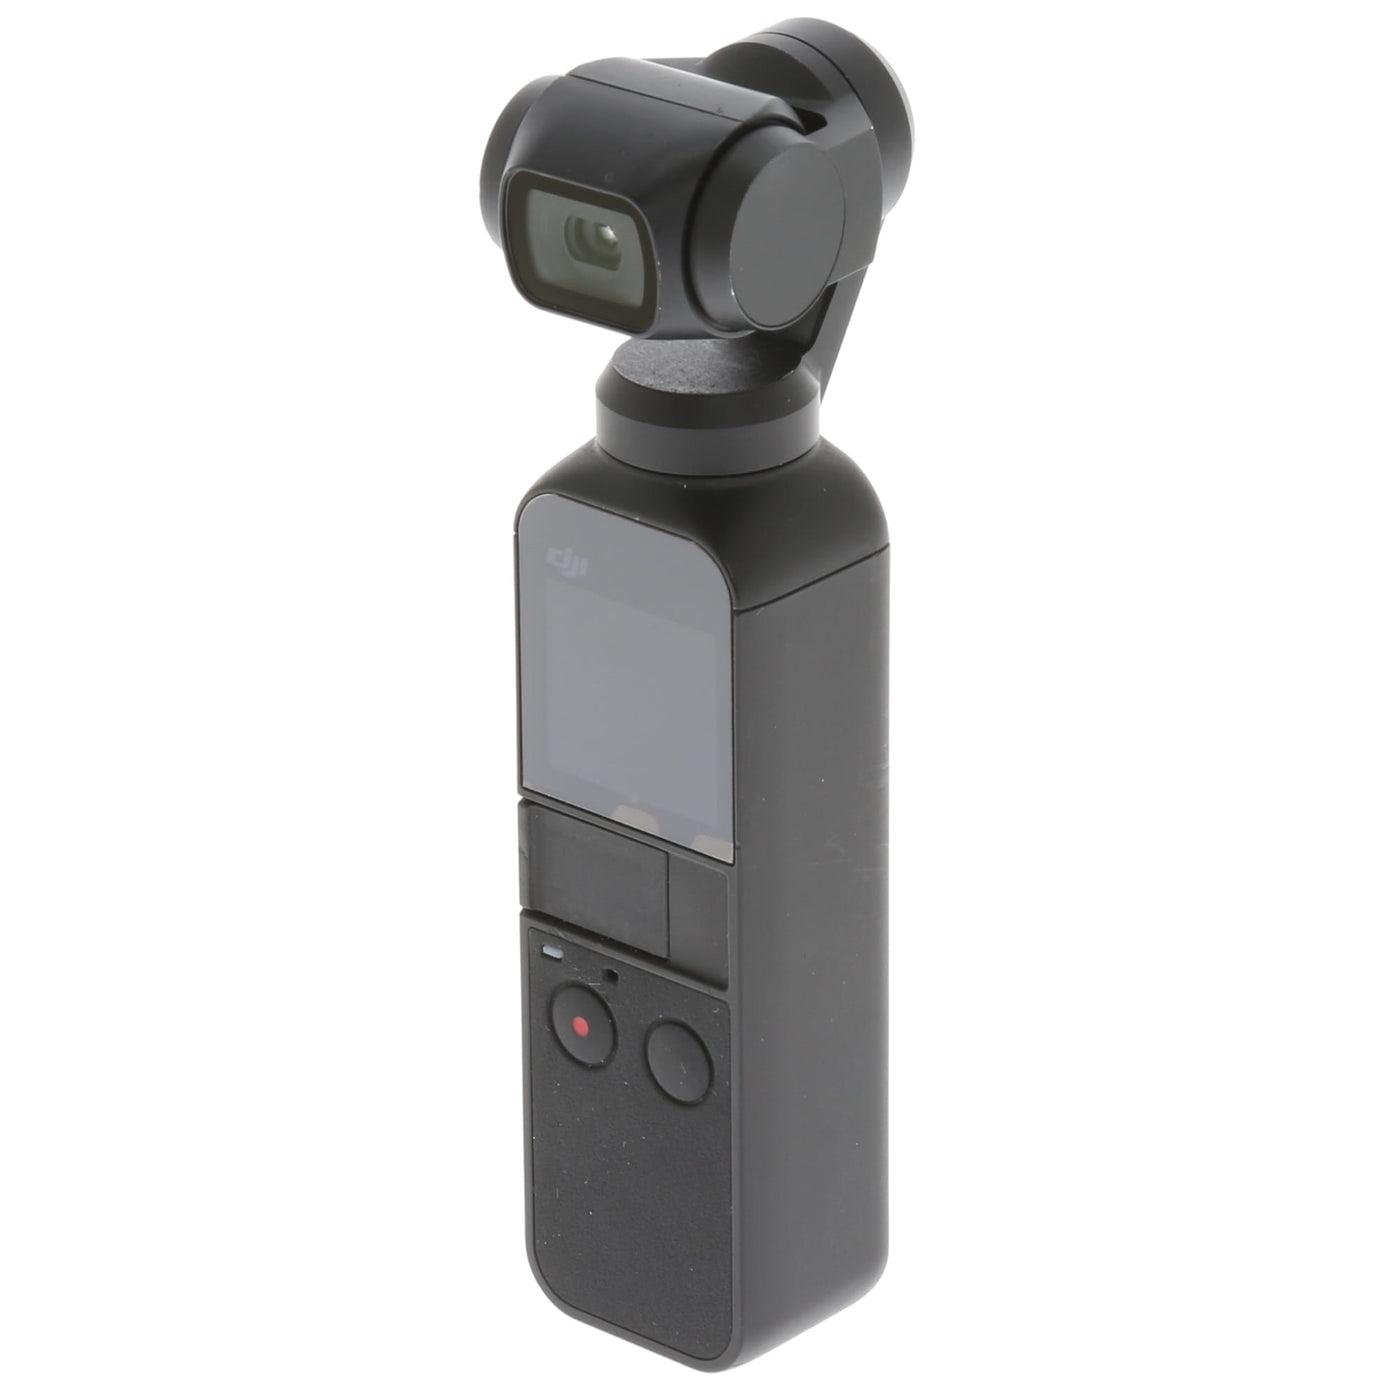 【中古品】DJI Osmo Pocket 小型3軸ジンバルカメラ Osmo Pocket — システムファイブ